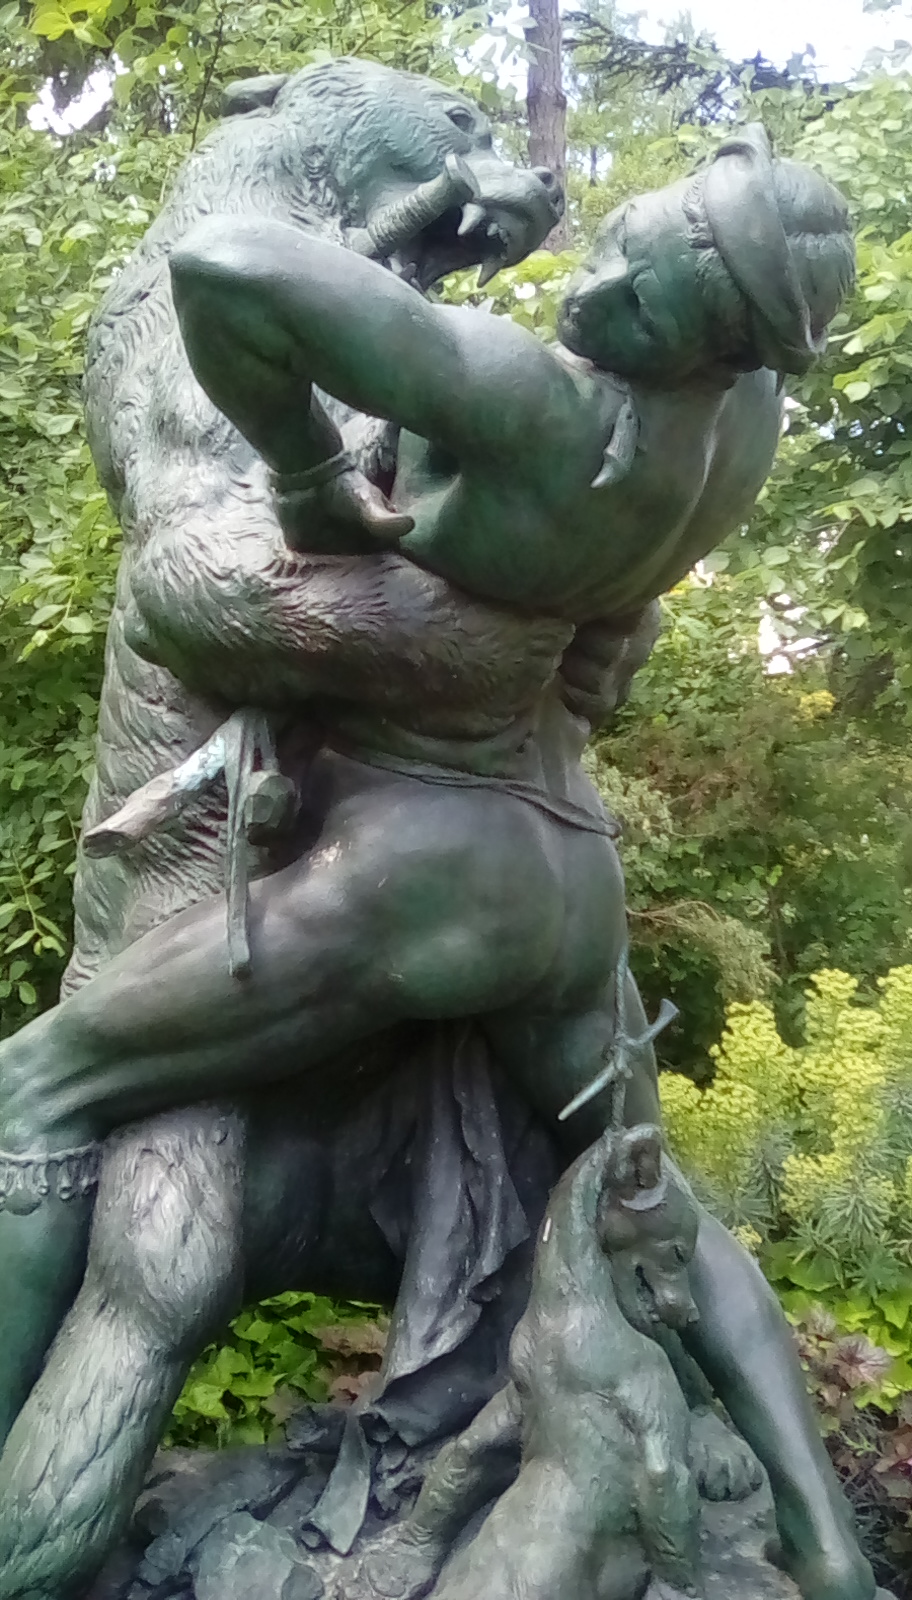 Statue in Paris park